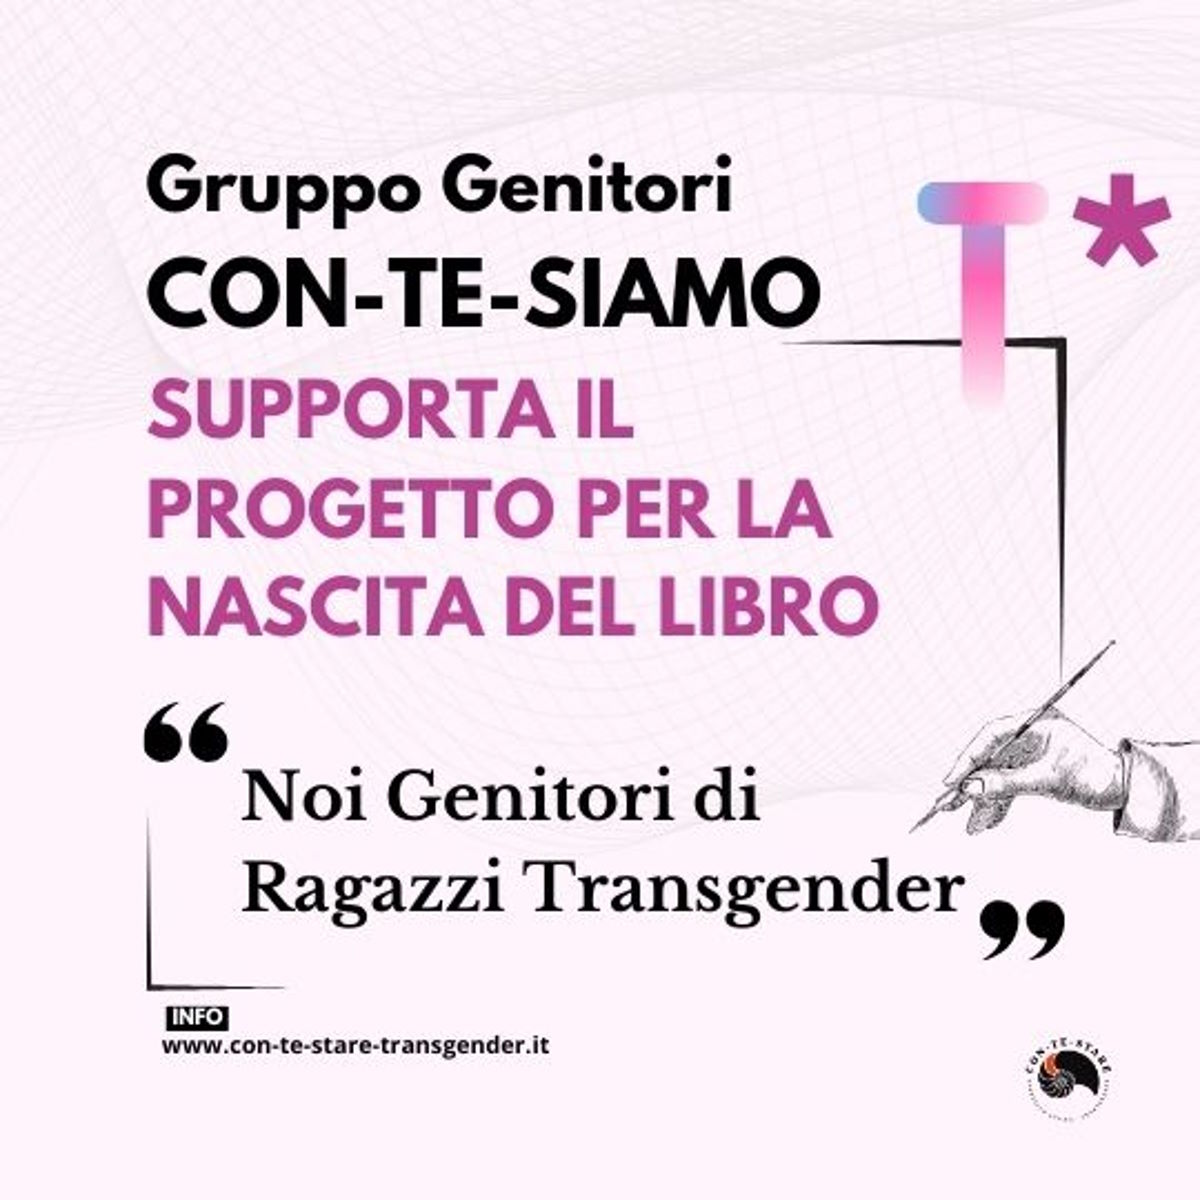 Supporta il progetto “Noi Genitori di Ragazzi Transgender”, per realizzare un libro sulla vita dei protagonisti prima e dopo il coming out dei figli